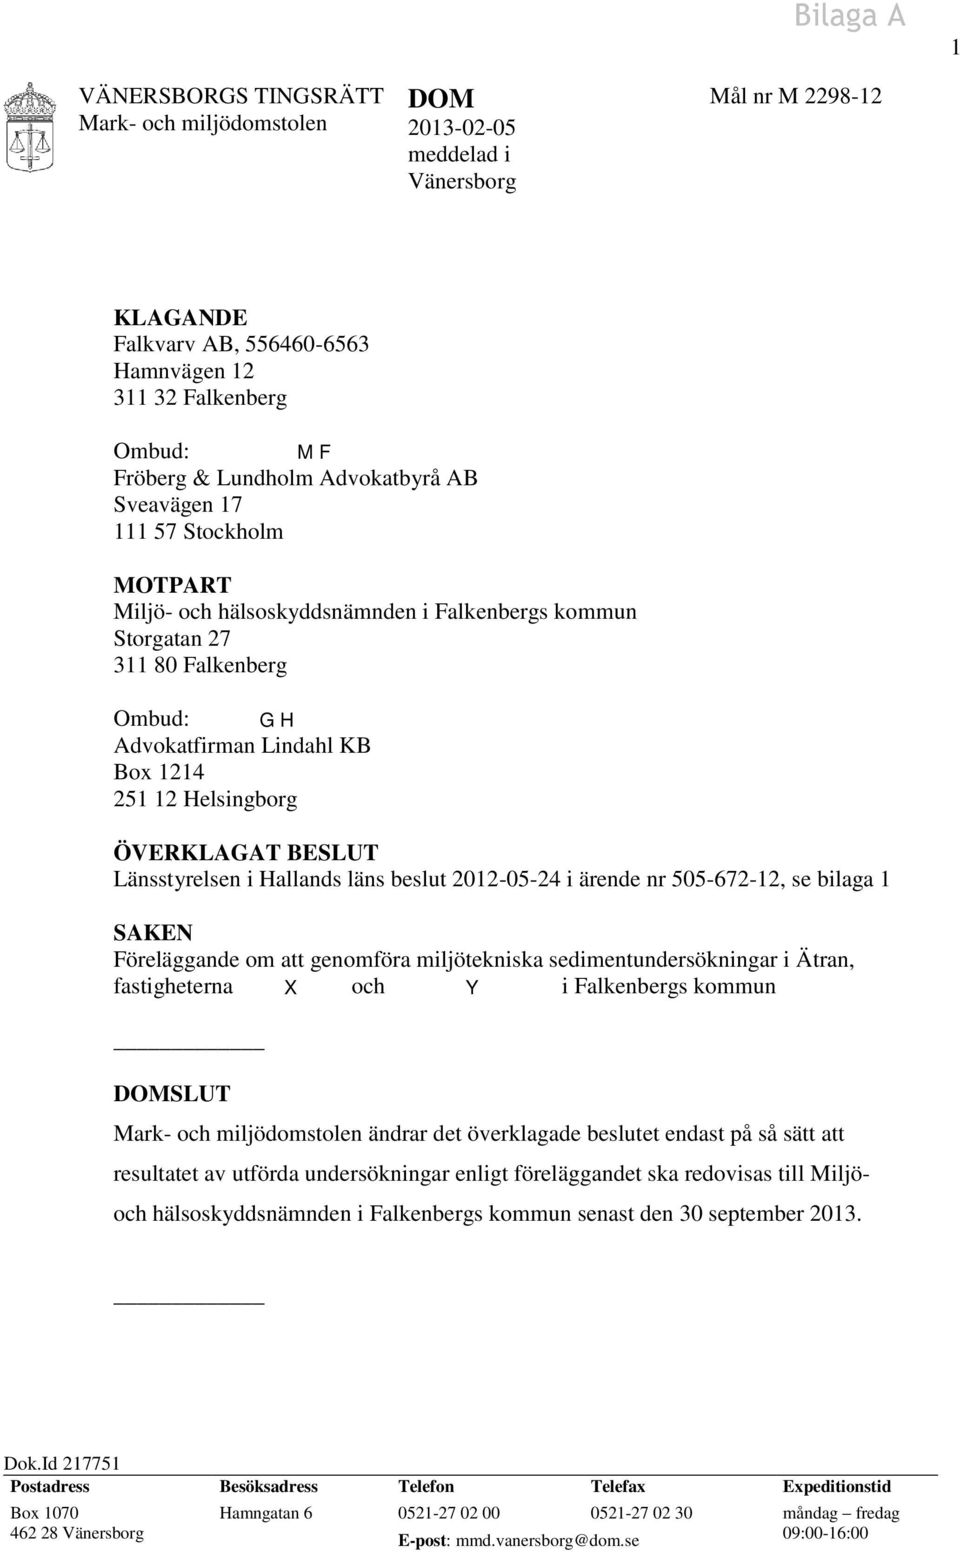 BESLUT Länsstyrelsen i Hallands läns beslut 2012-05-24 i ärende nr 505-672-12, se bilaga 1 SAKEN Föreläggande om att genomföra miljötekniska sedimentundersökningar i Ätran, fastigheterna X och Y i